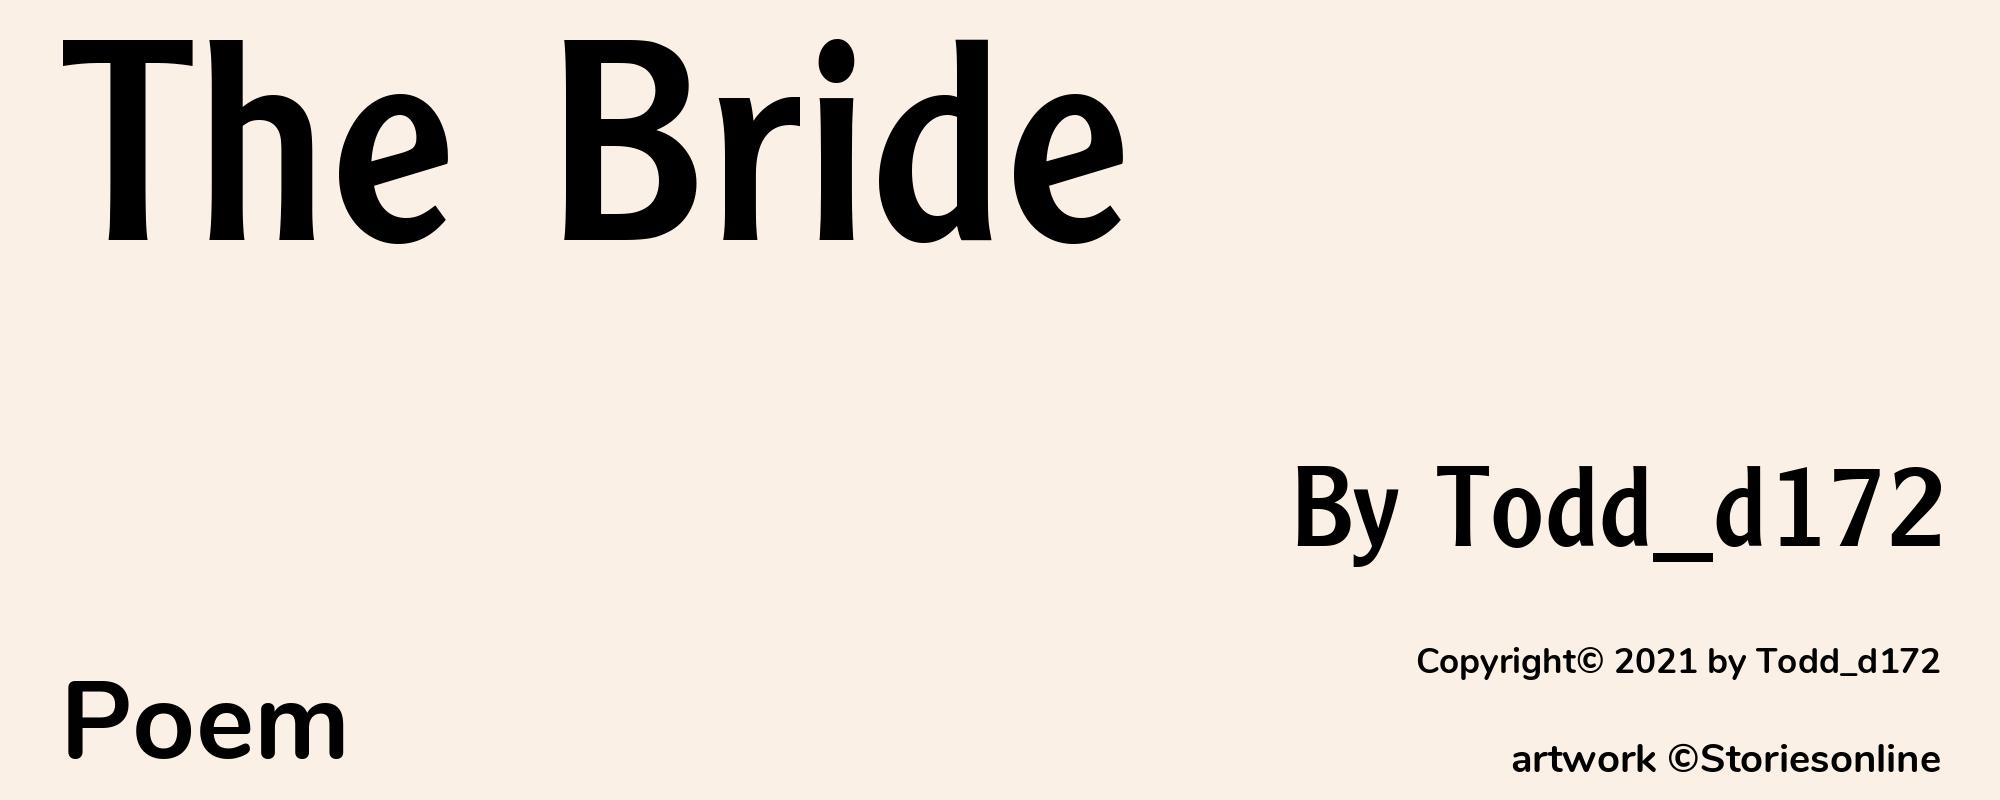 The Bride - Cover